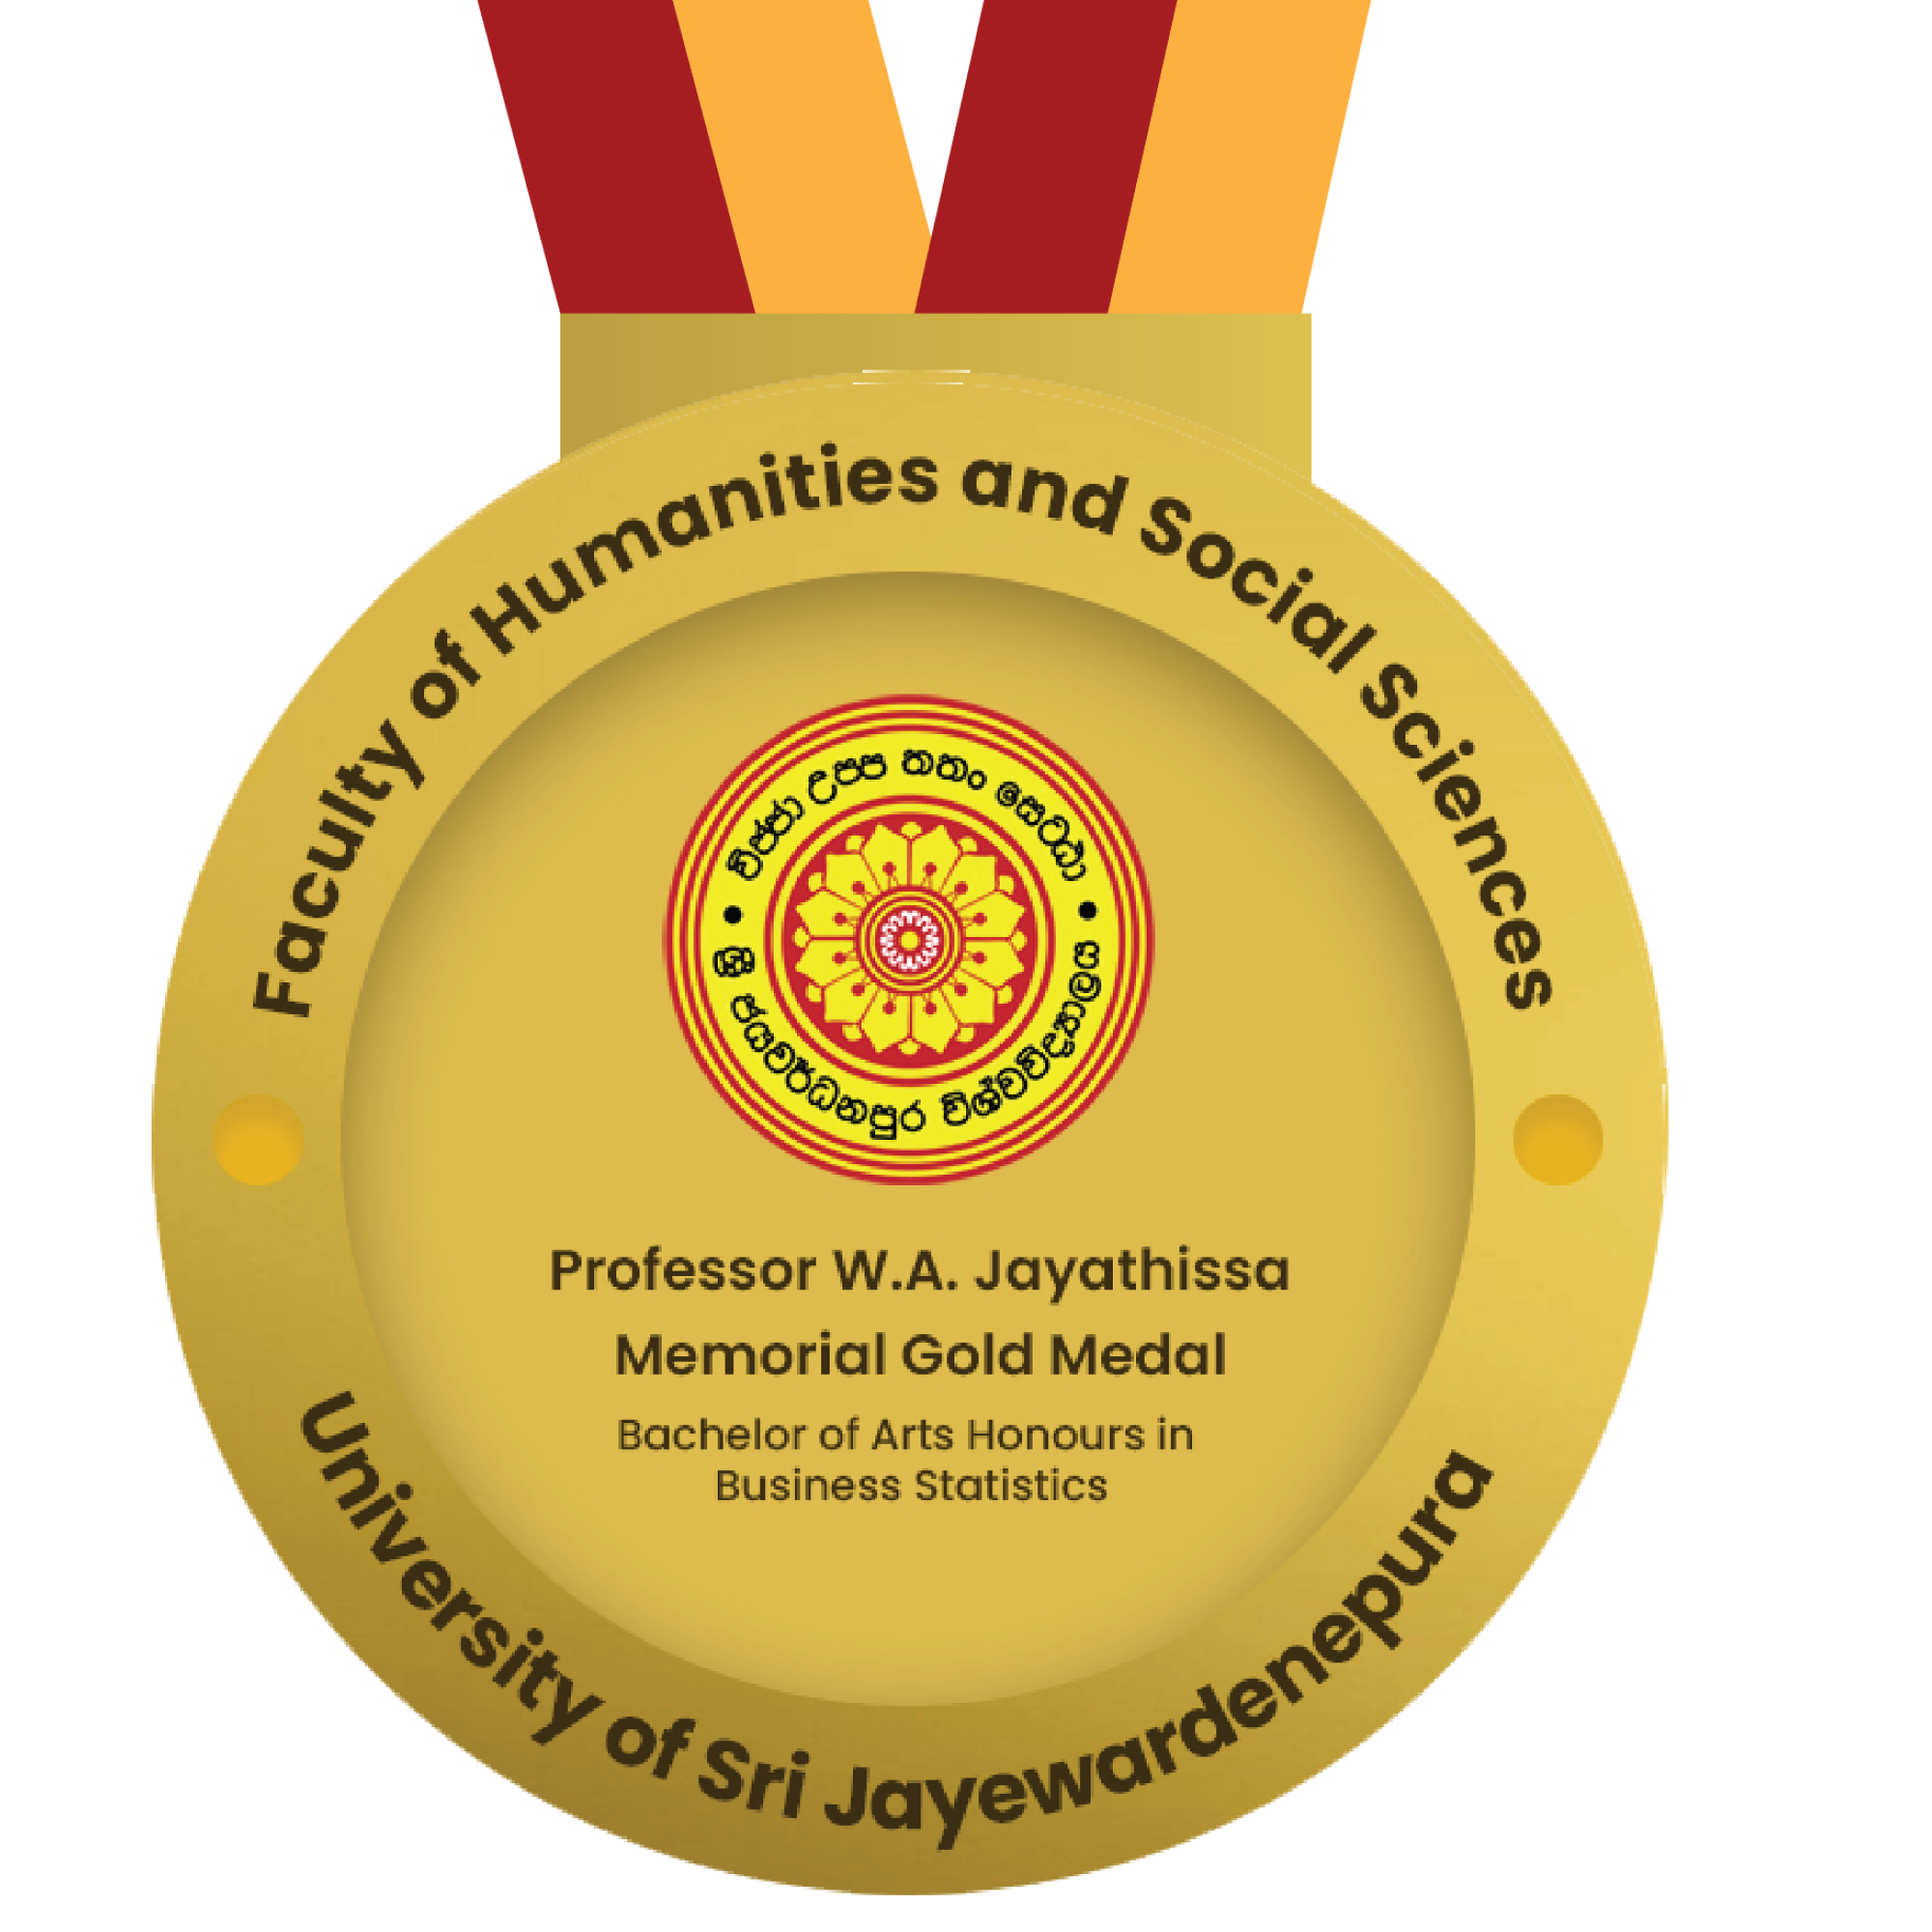 Professor W.A. Jayathissa Memorial Gold Medal